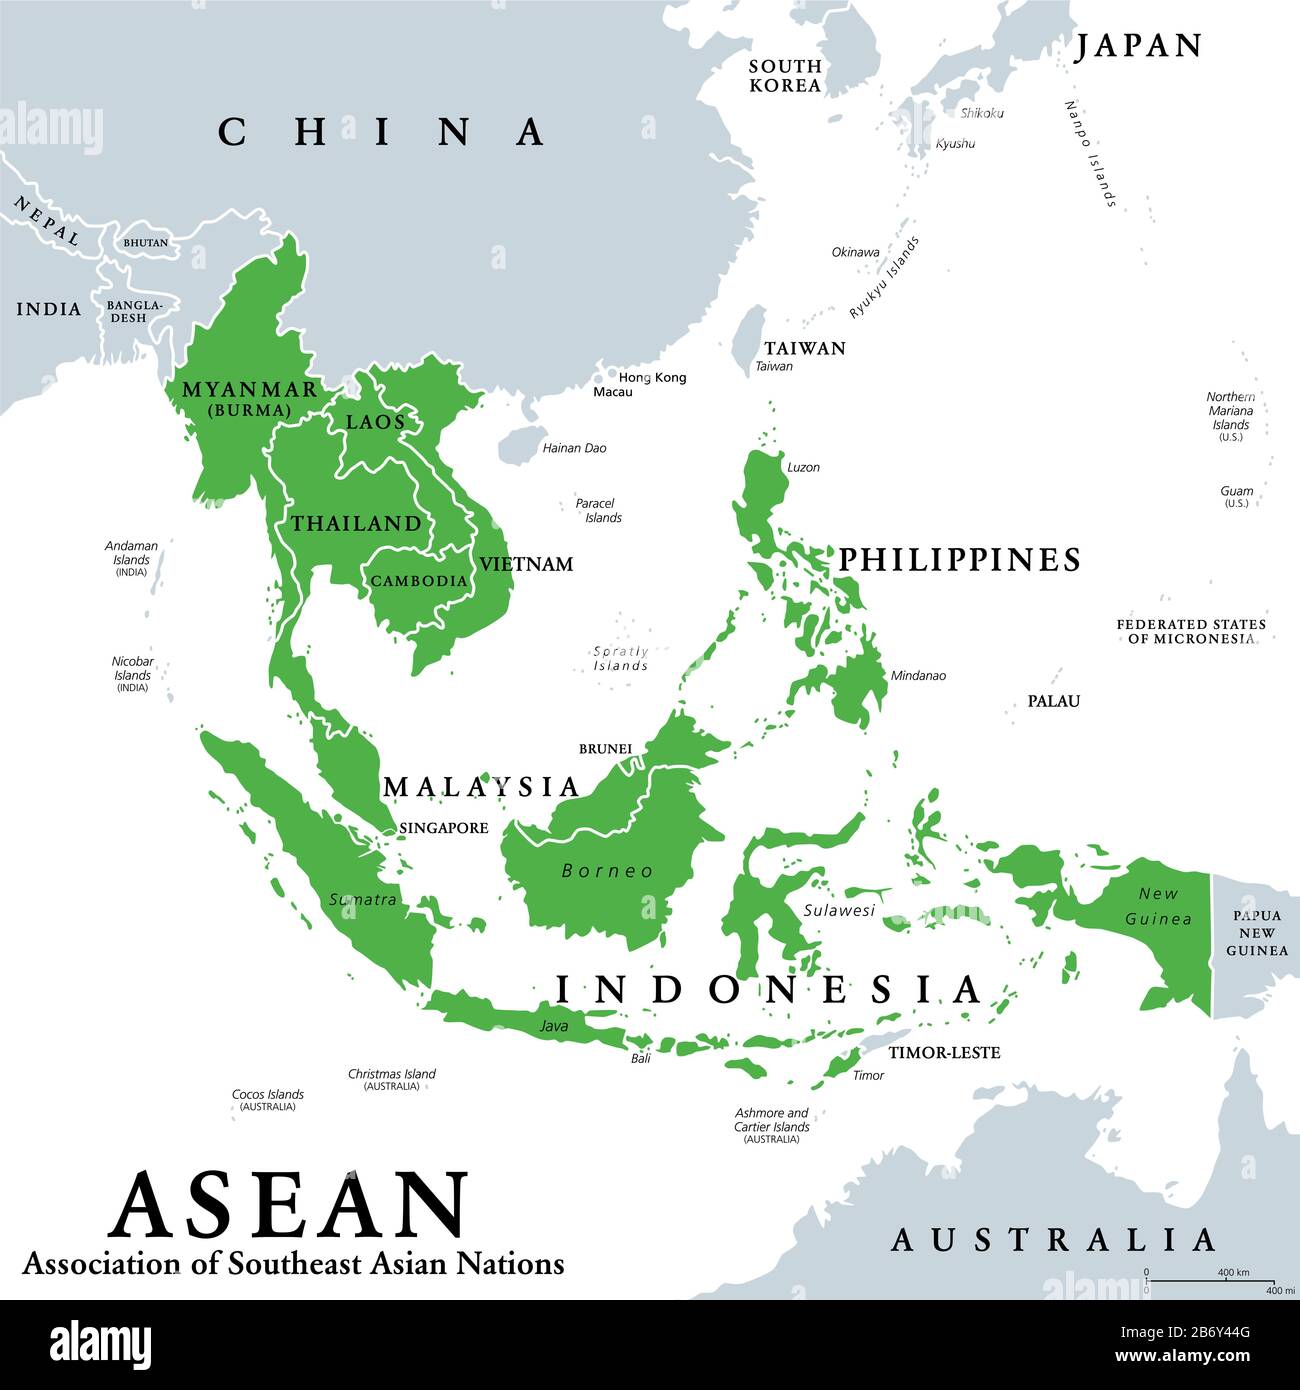 ASEAN-Mitgliedsstaaten, politische Karte. Verband Südostasiatischer Nationen, eine regionale zwischenstaatliche Organisation mit 10 Mitgliedsländern. Stockfoto